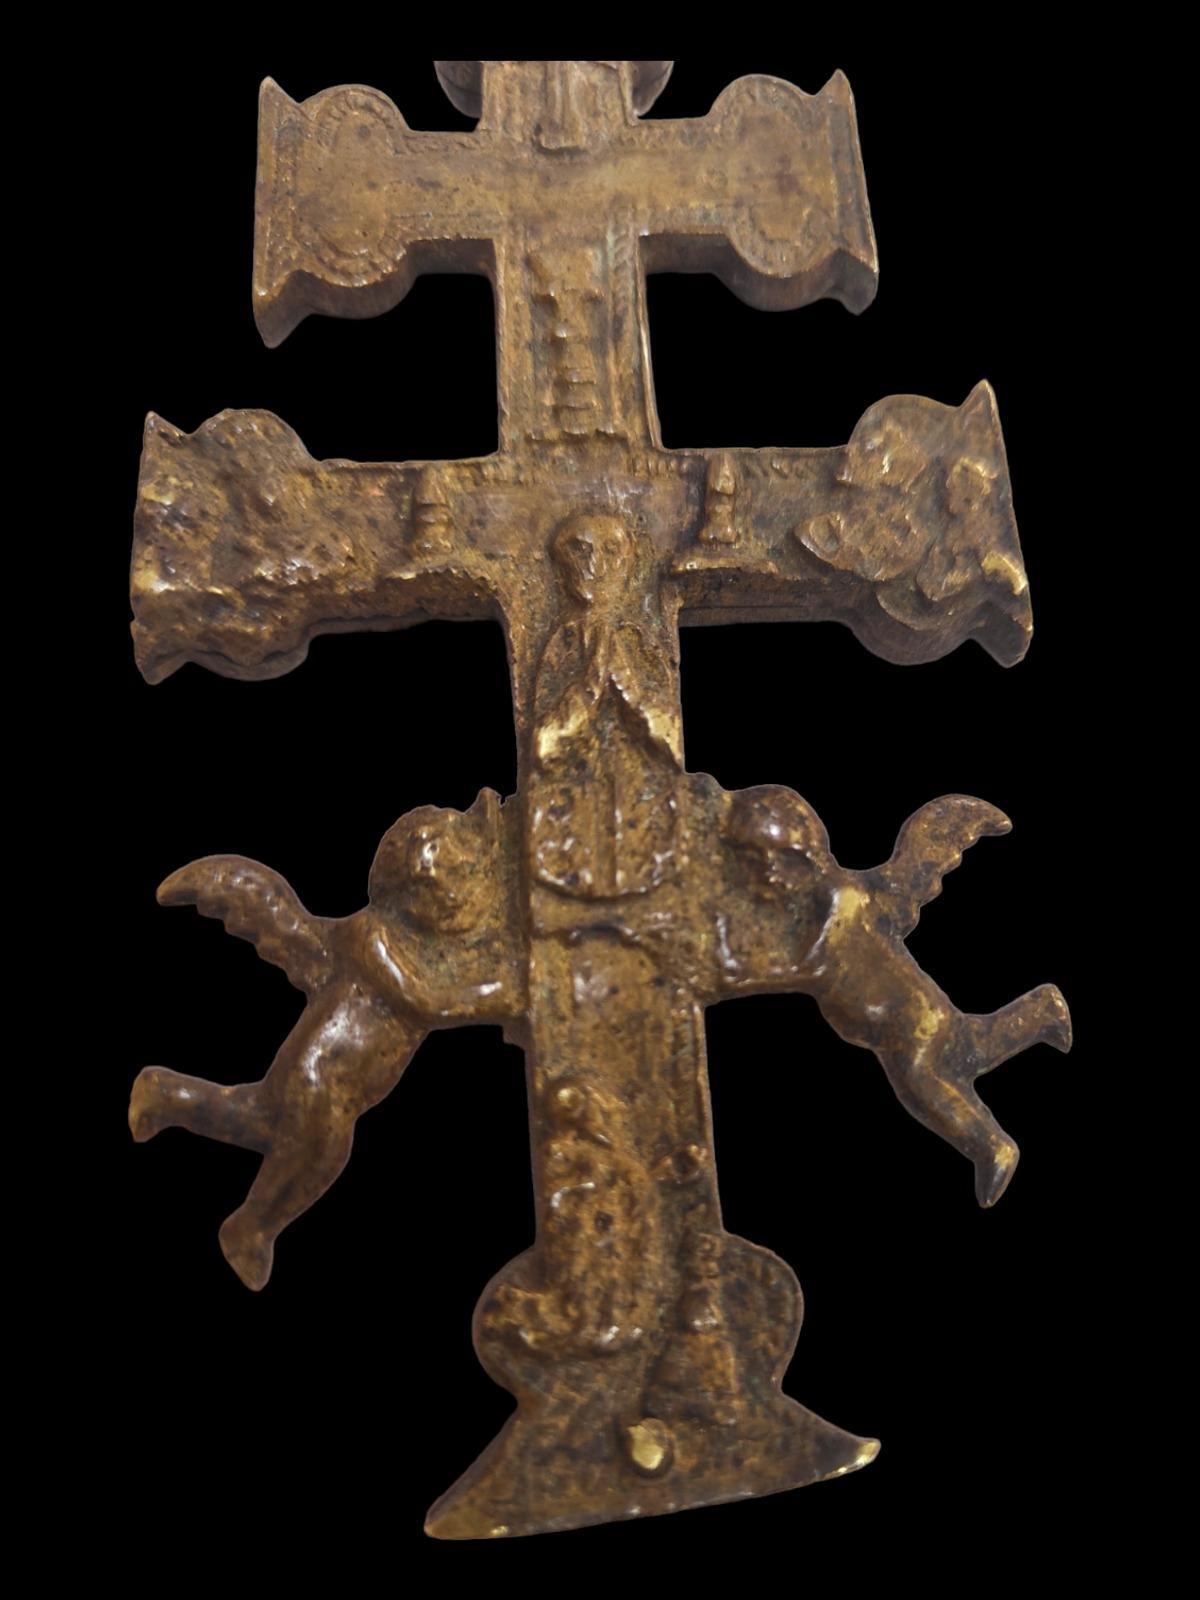 Croix de caravaca XVIIe siècle.
Très belle croix de caravaca en bronze. 17ème siècle. Mesures : 14X6 cm.
Bon état.